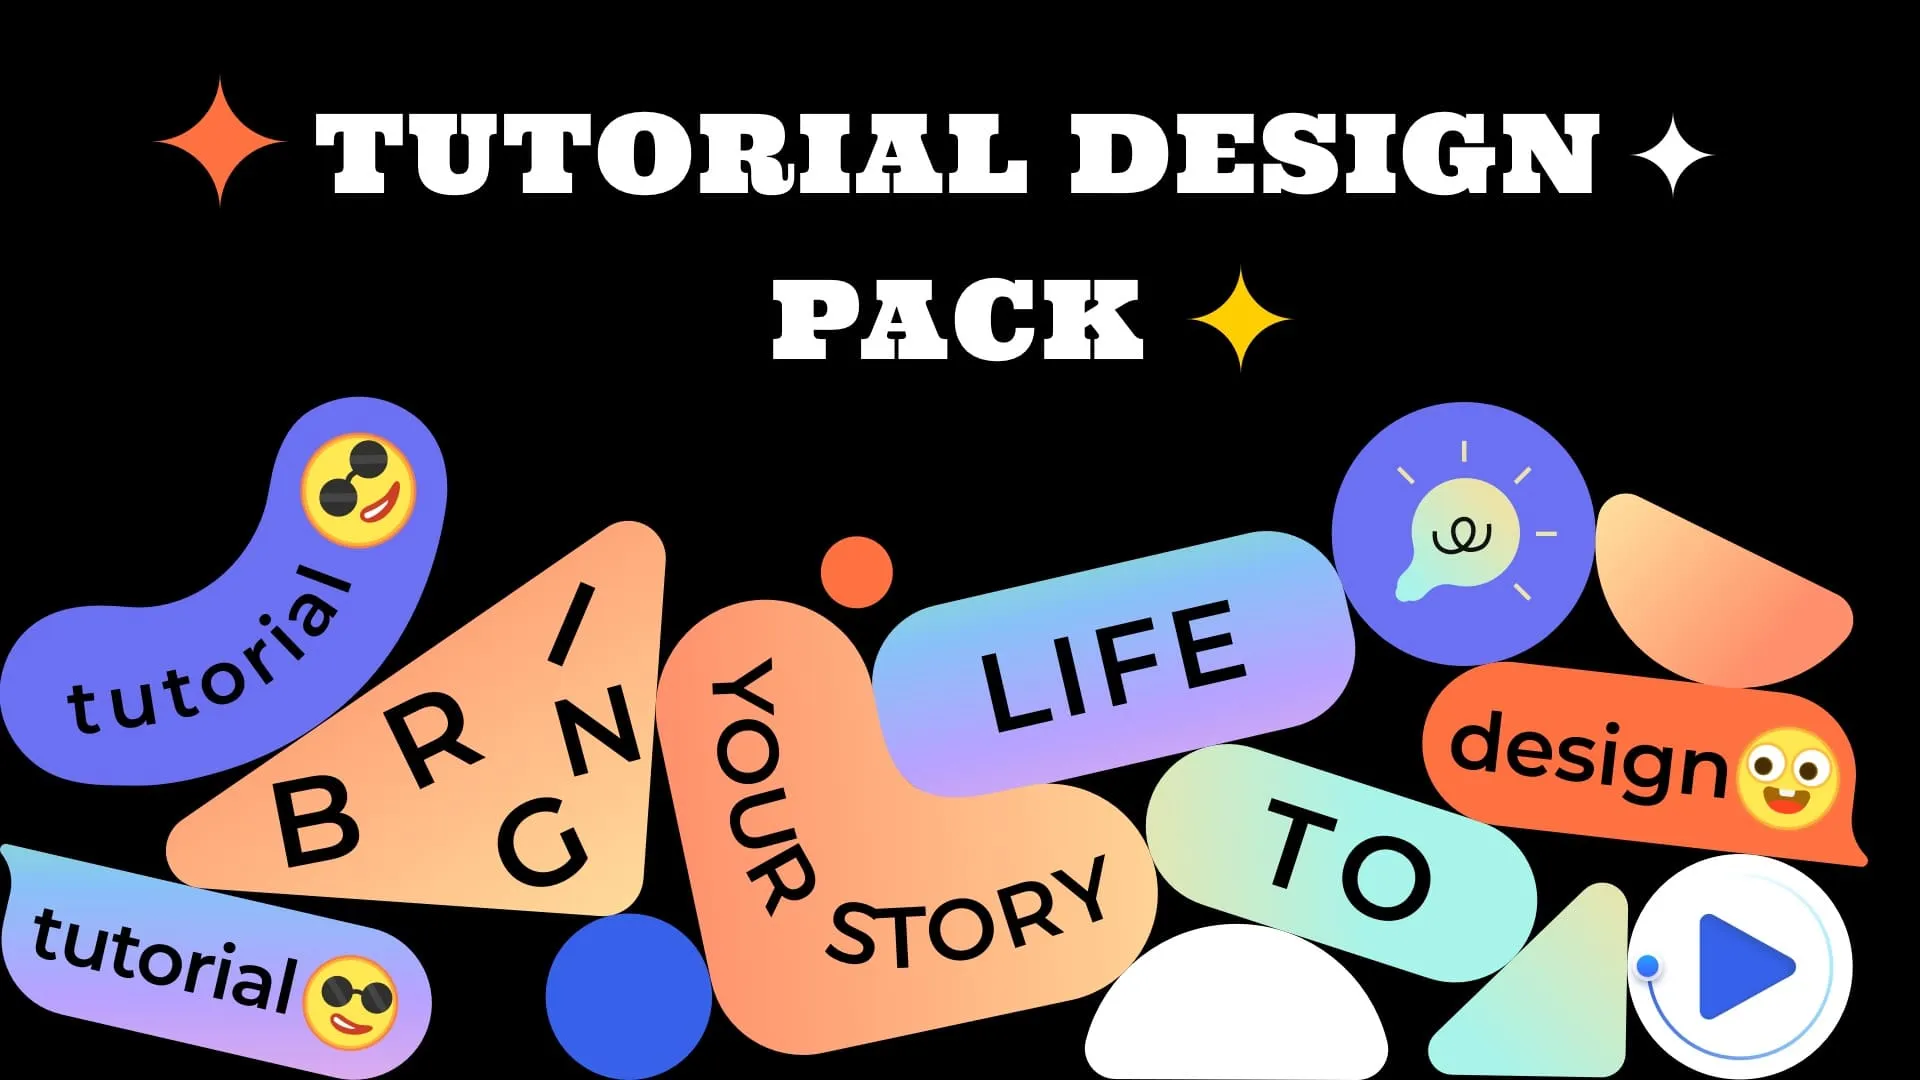 Tutorial Design Pack